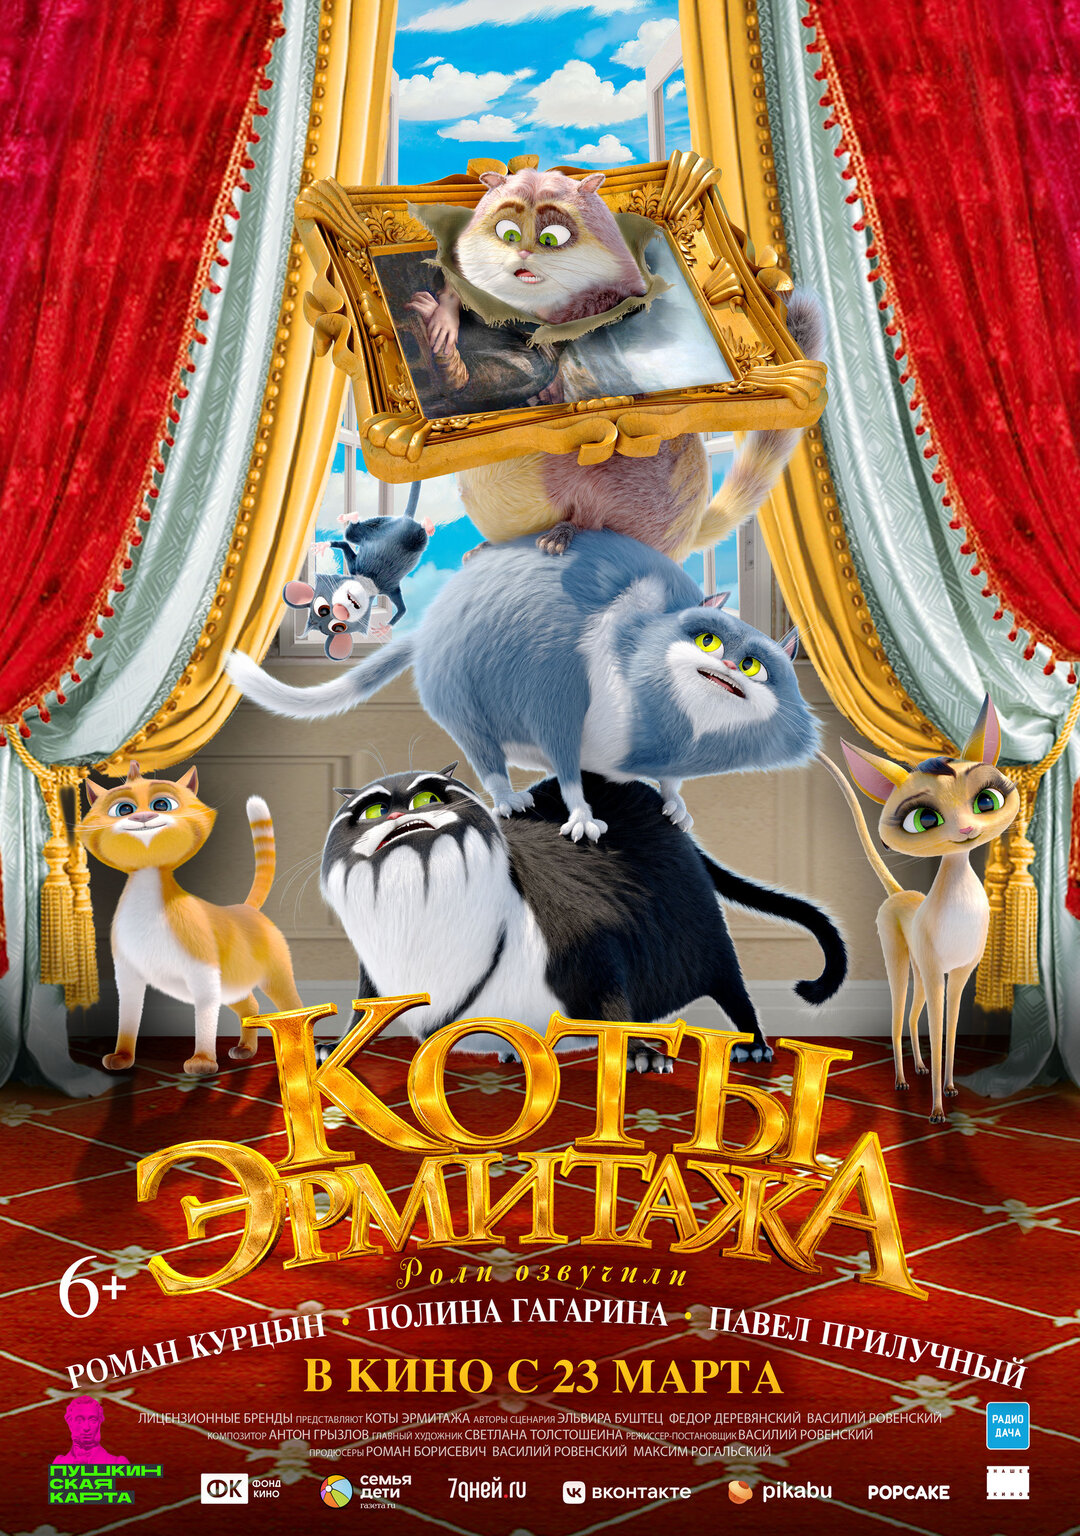 Обложка к картине "Коты Эрмитажа"